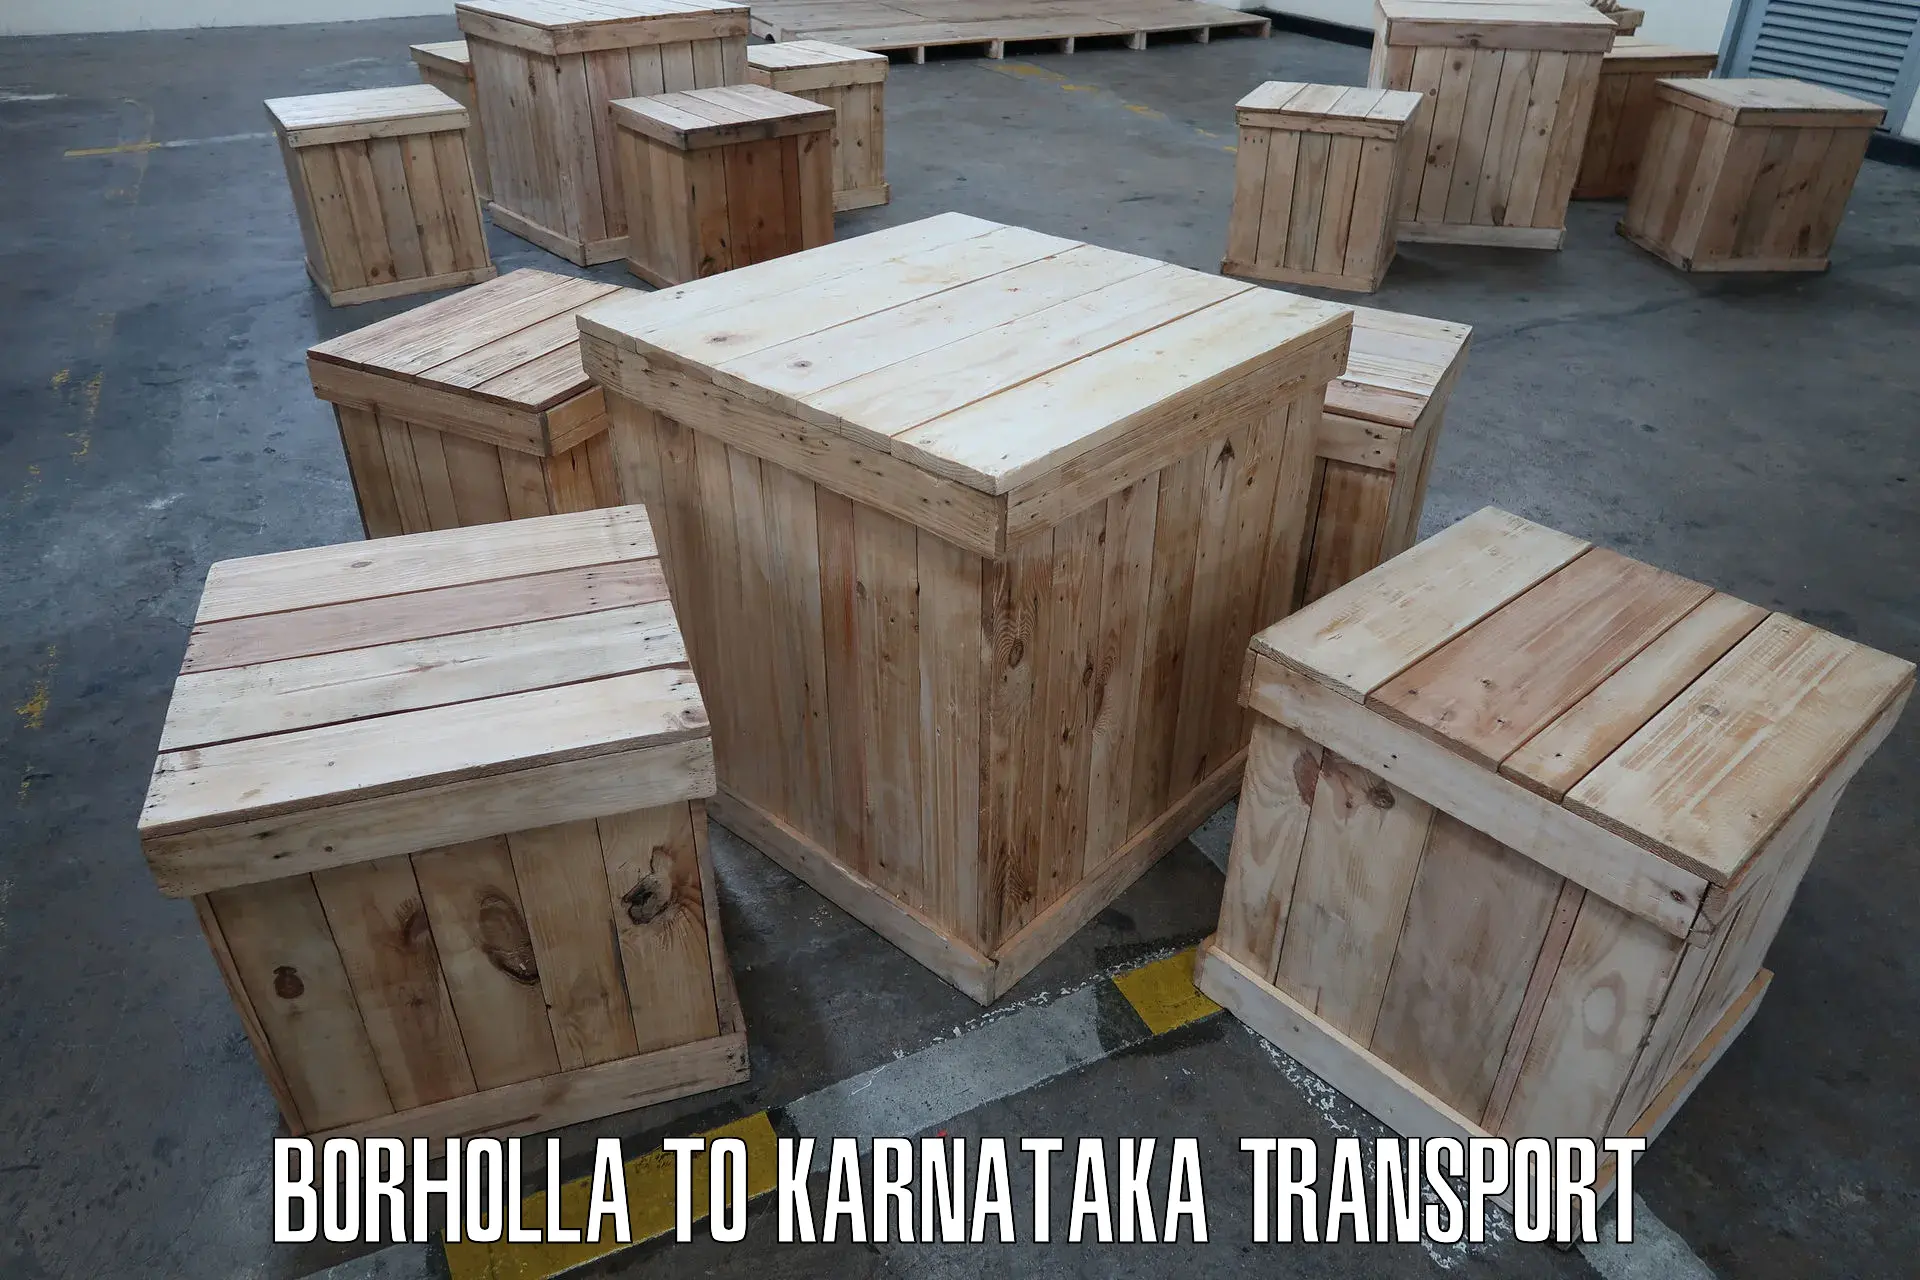 Online transport booking Borholla to Karnataka